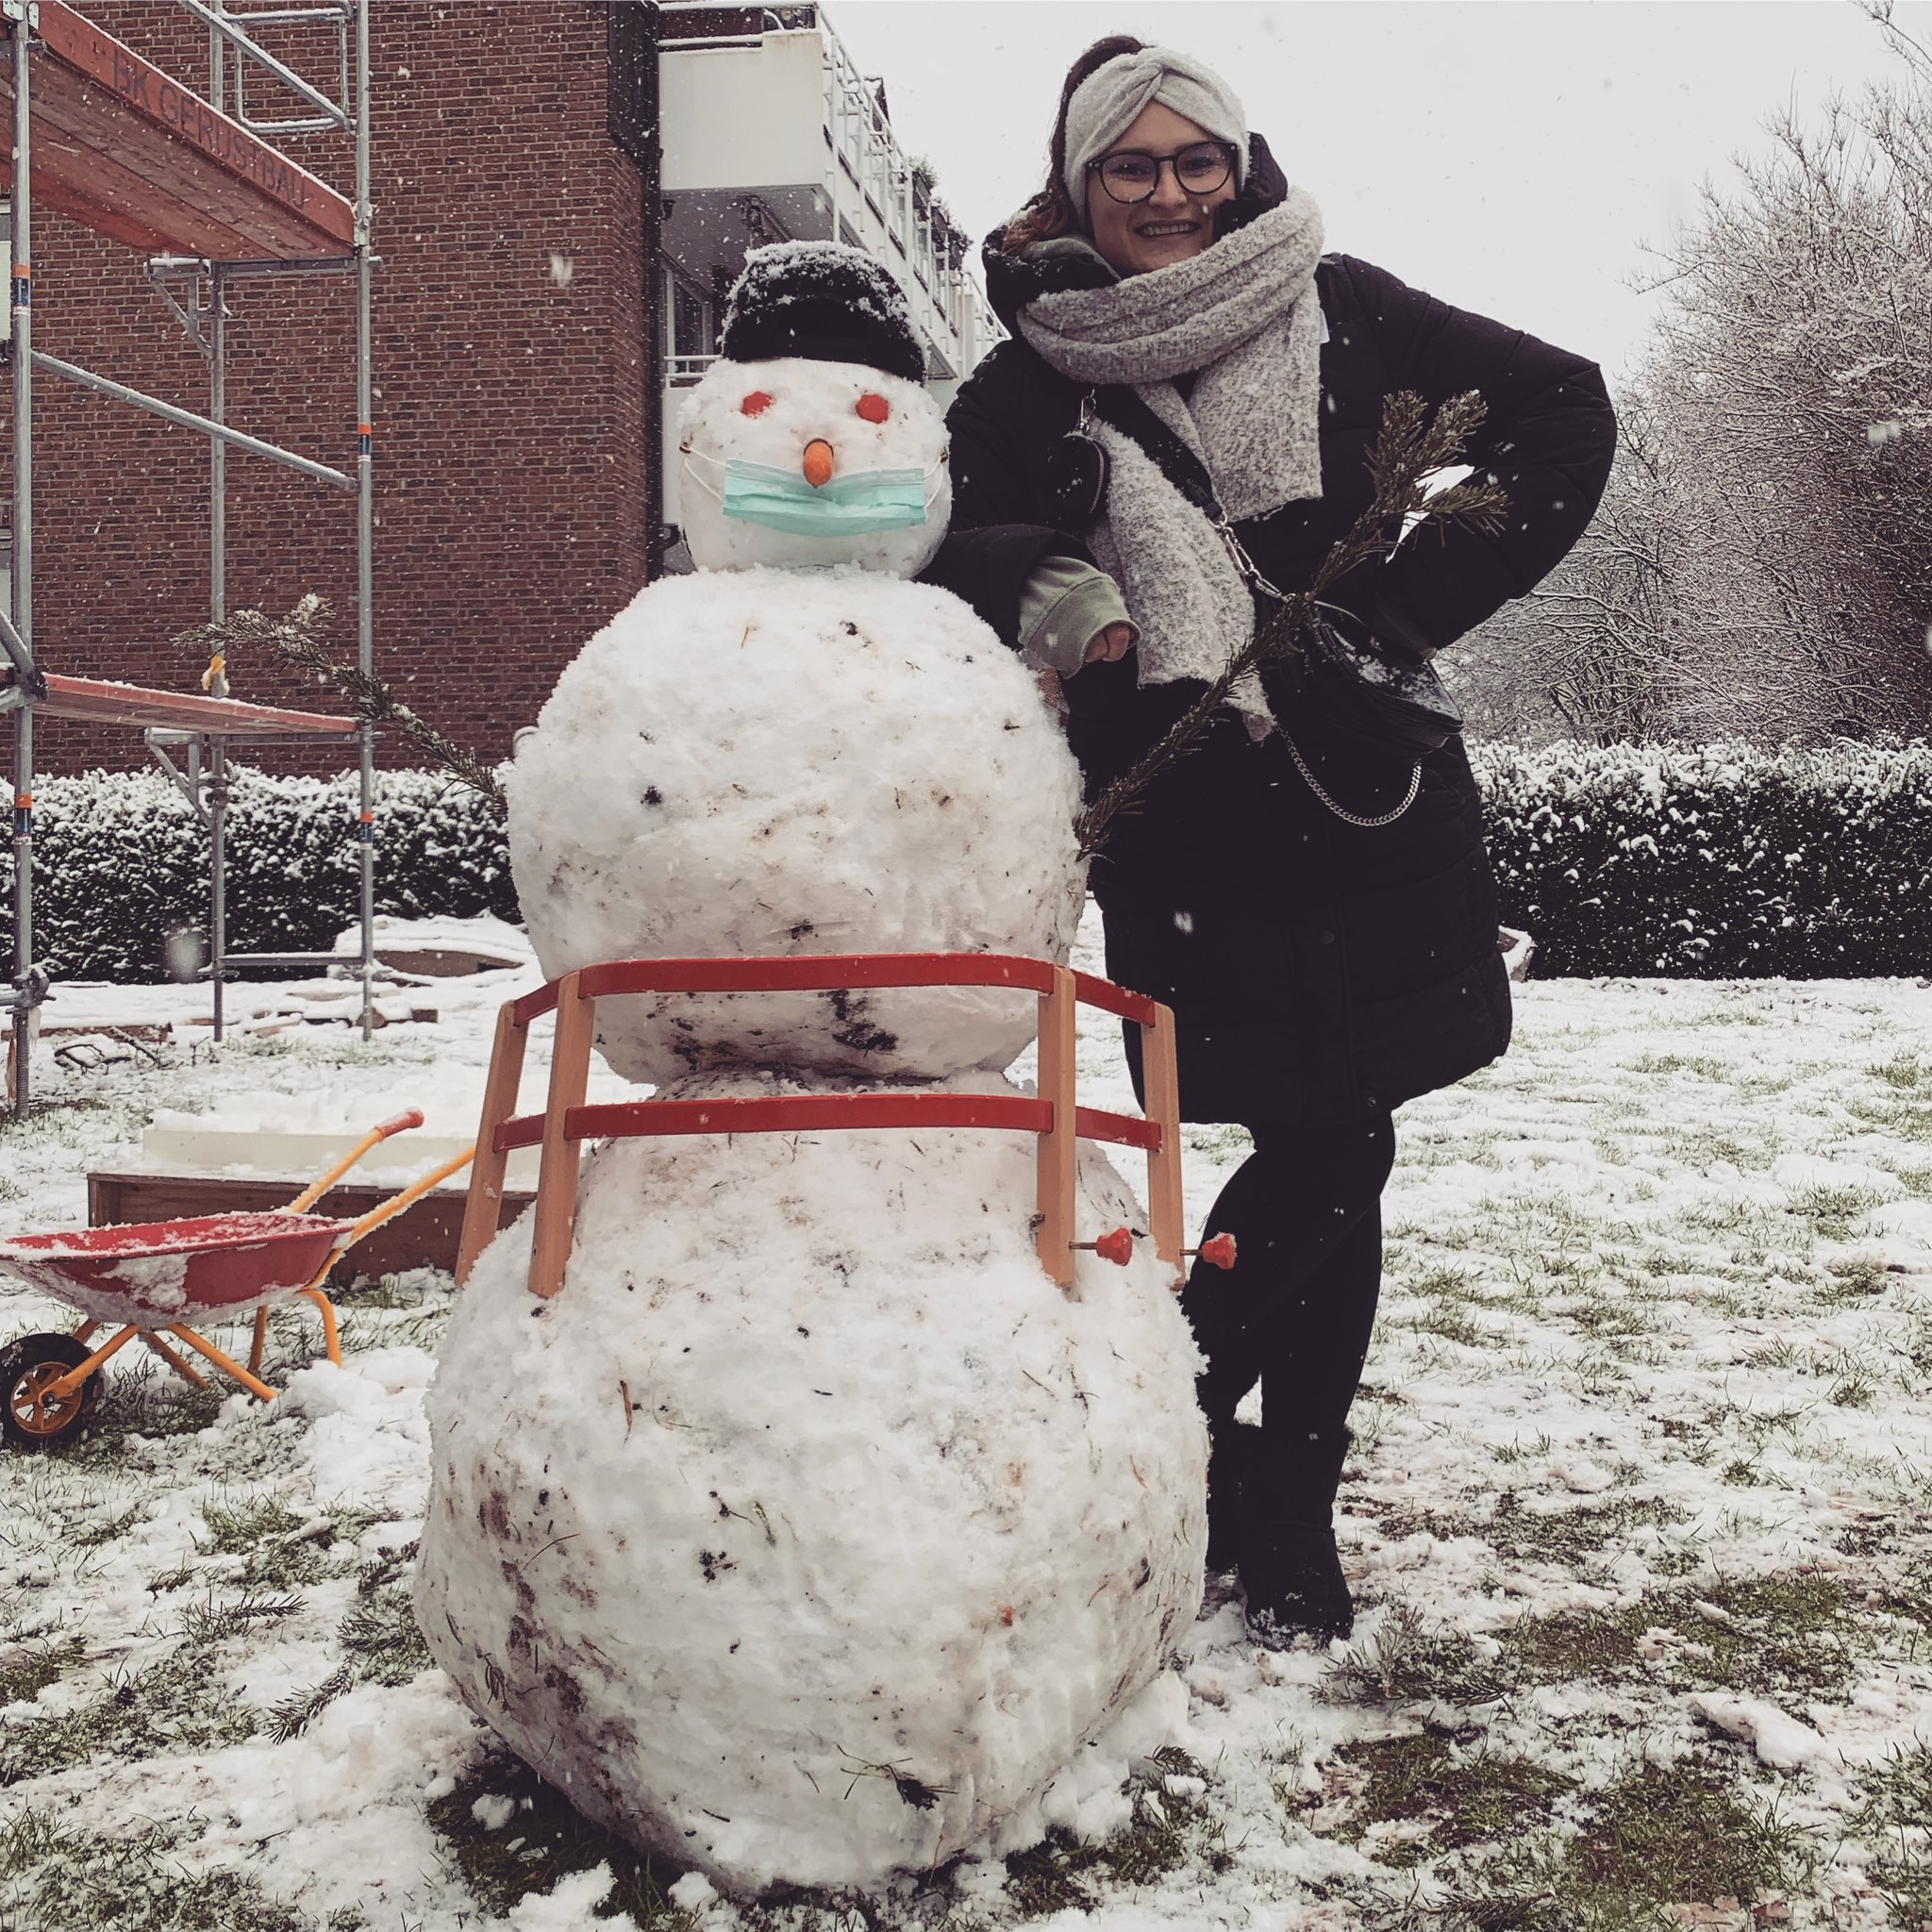 Olaf und ich hatten heute viel Spaß, natürlich trägt er eine Maske 😷 
.
#snow #snowman #snowday #happy